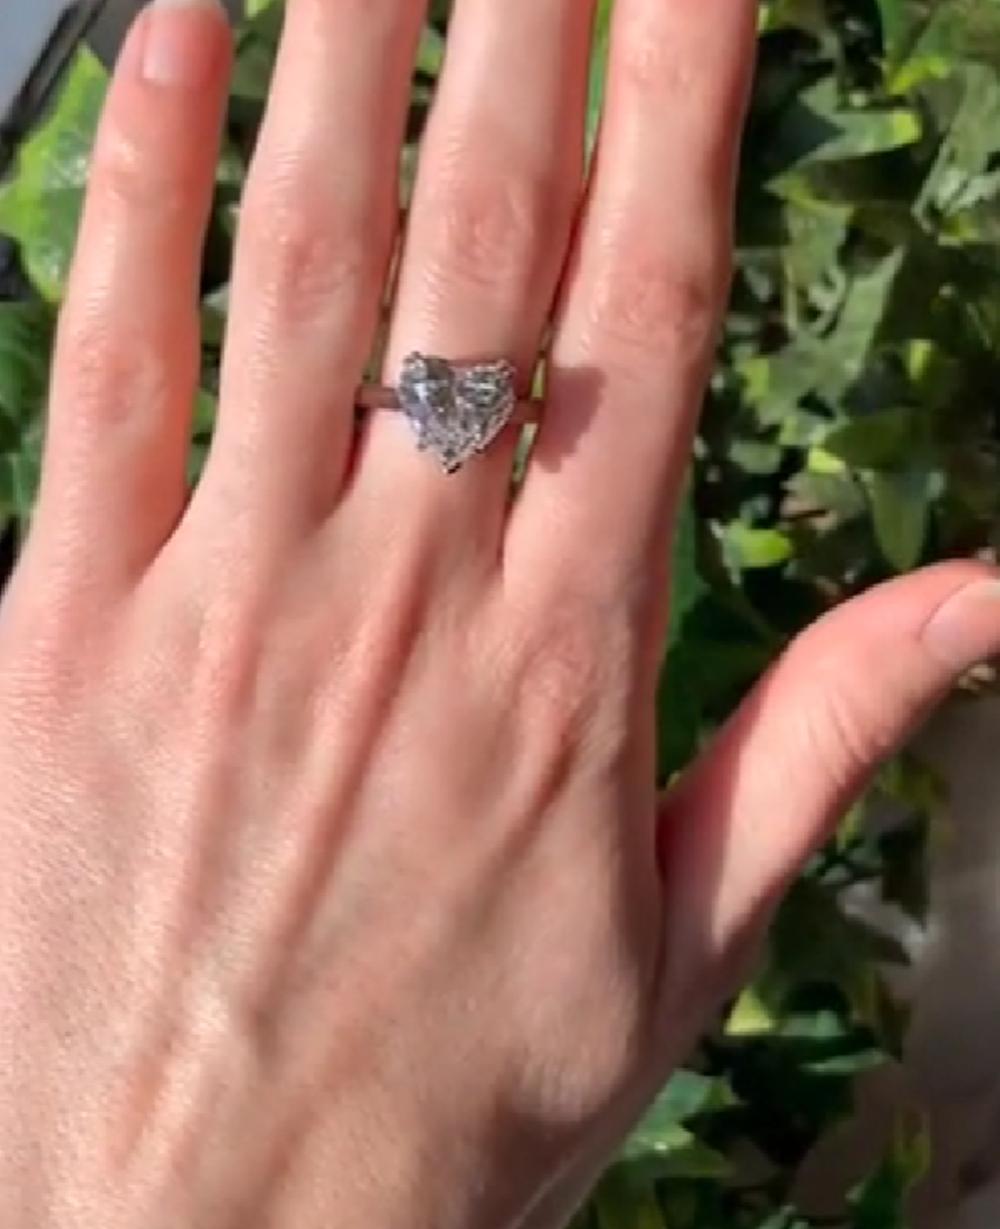 heart shaped diamond ring